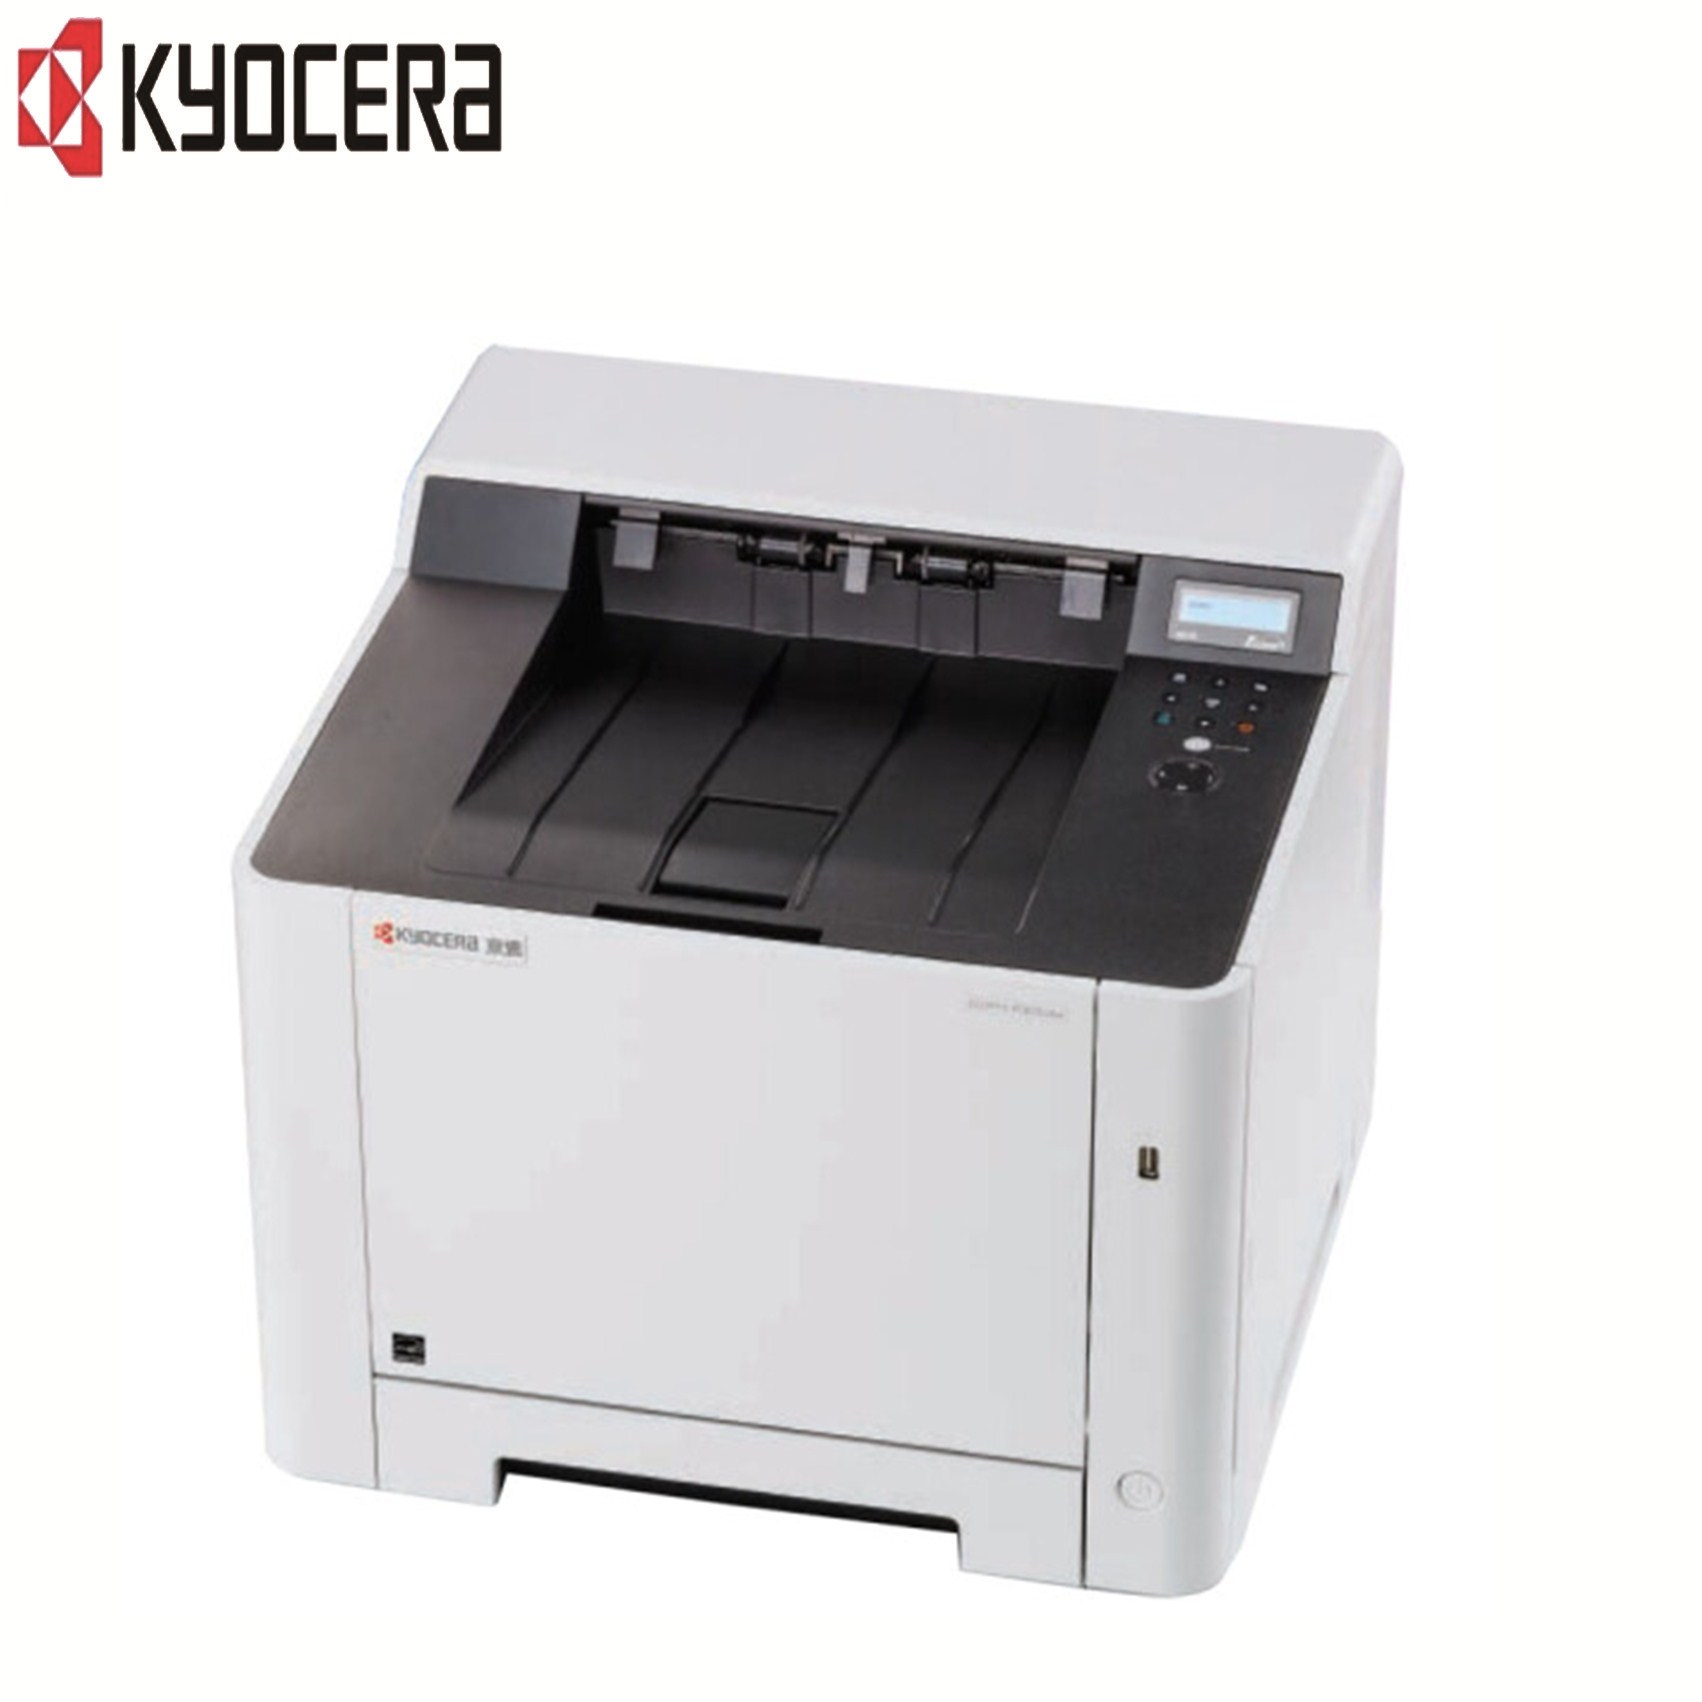 京瓷(kyocera)ECOSYS P5021cdw 彩色激光打印机